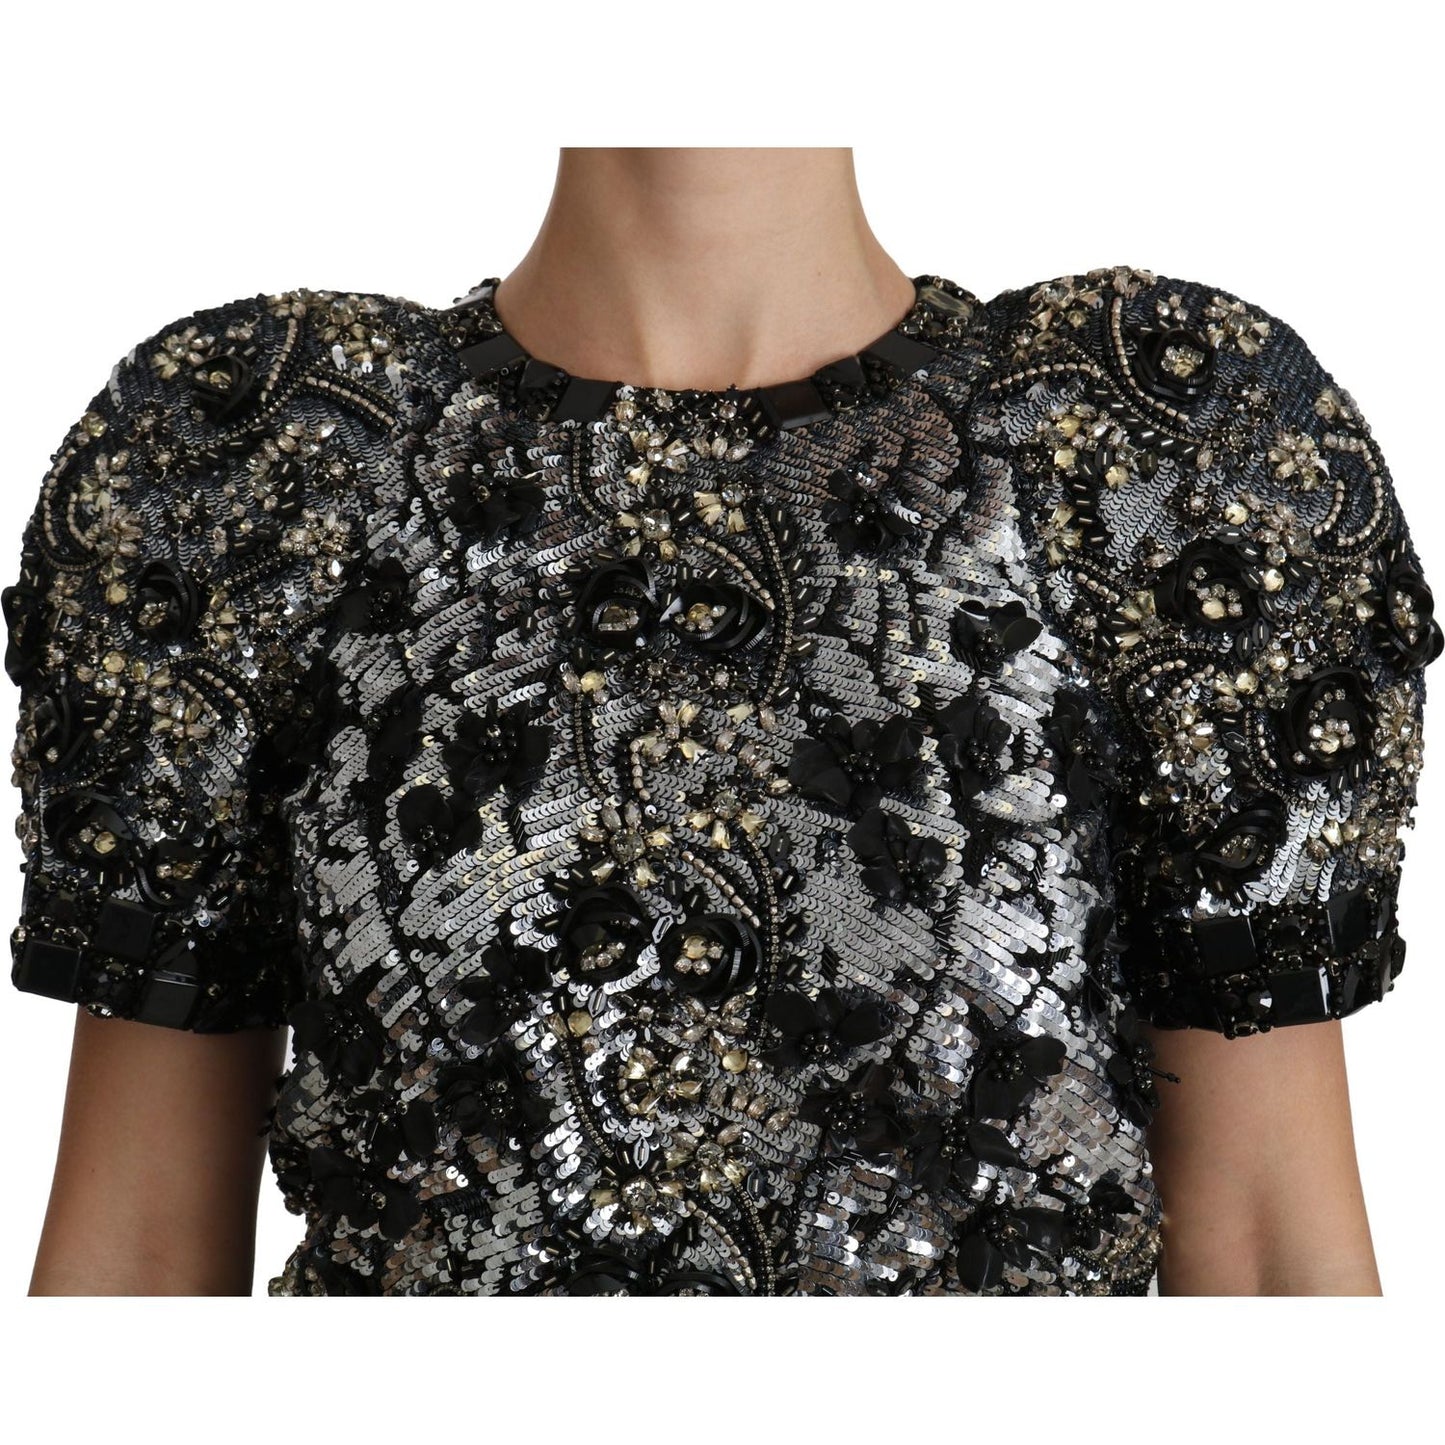 Dolce & Gabbana | Black Sequined Crystal Embellished Top Blouse | McRichard Designer Brands